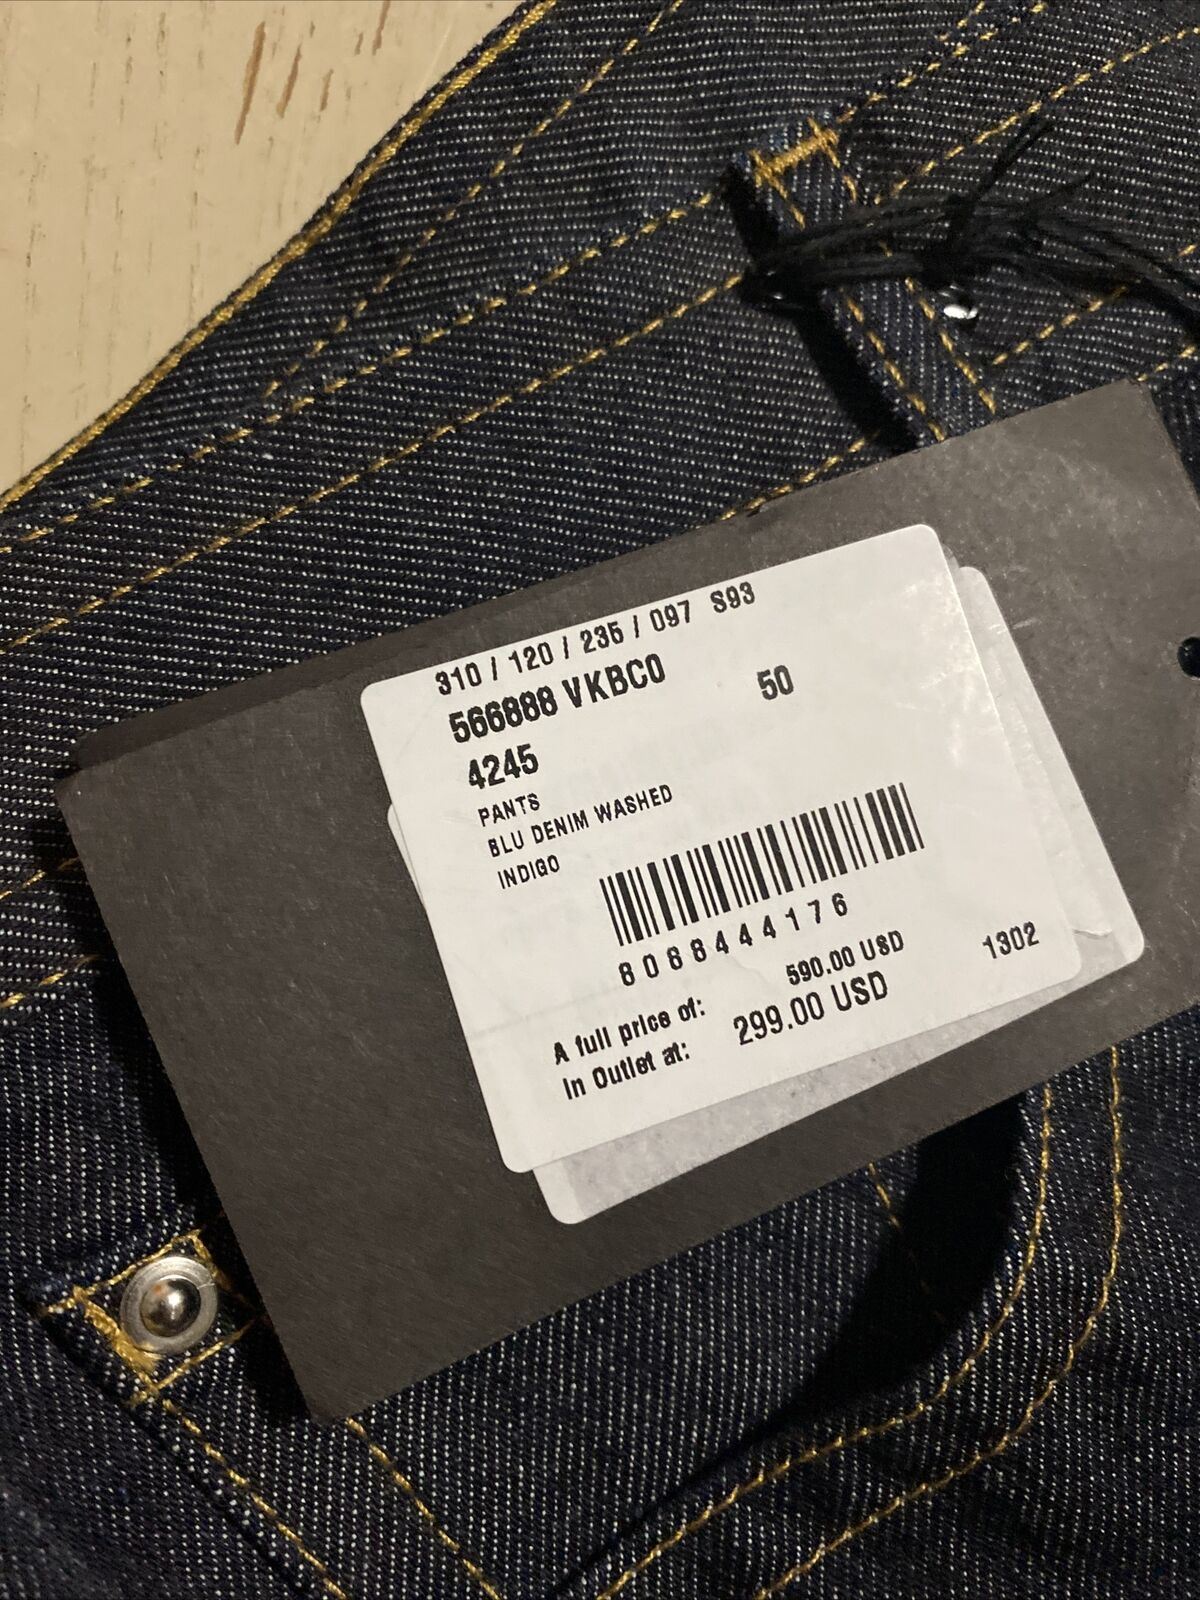 СЗТ 590 долларов США Bottega Veneta Мужские джинсовые брюки синие деним 34 США/50 ЕС Италия